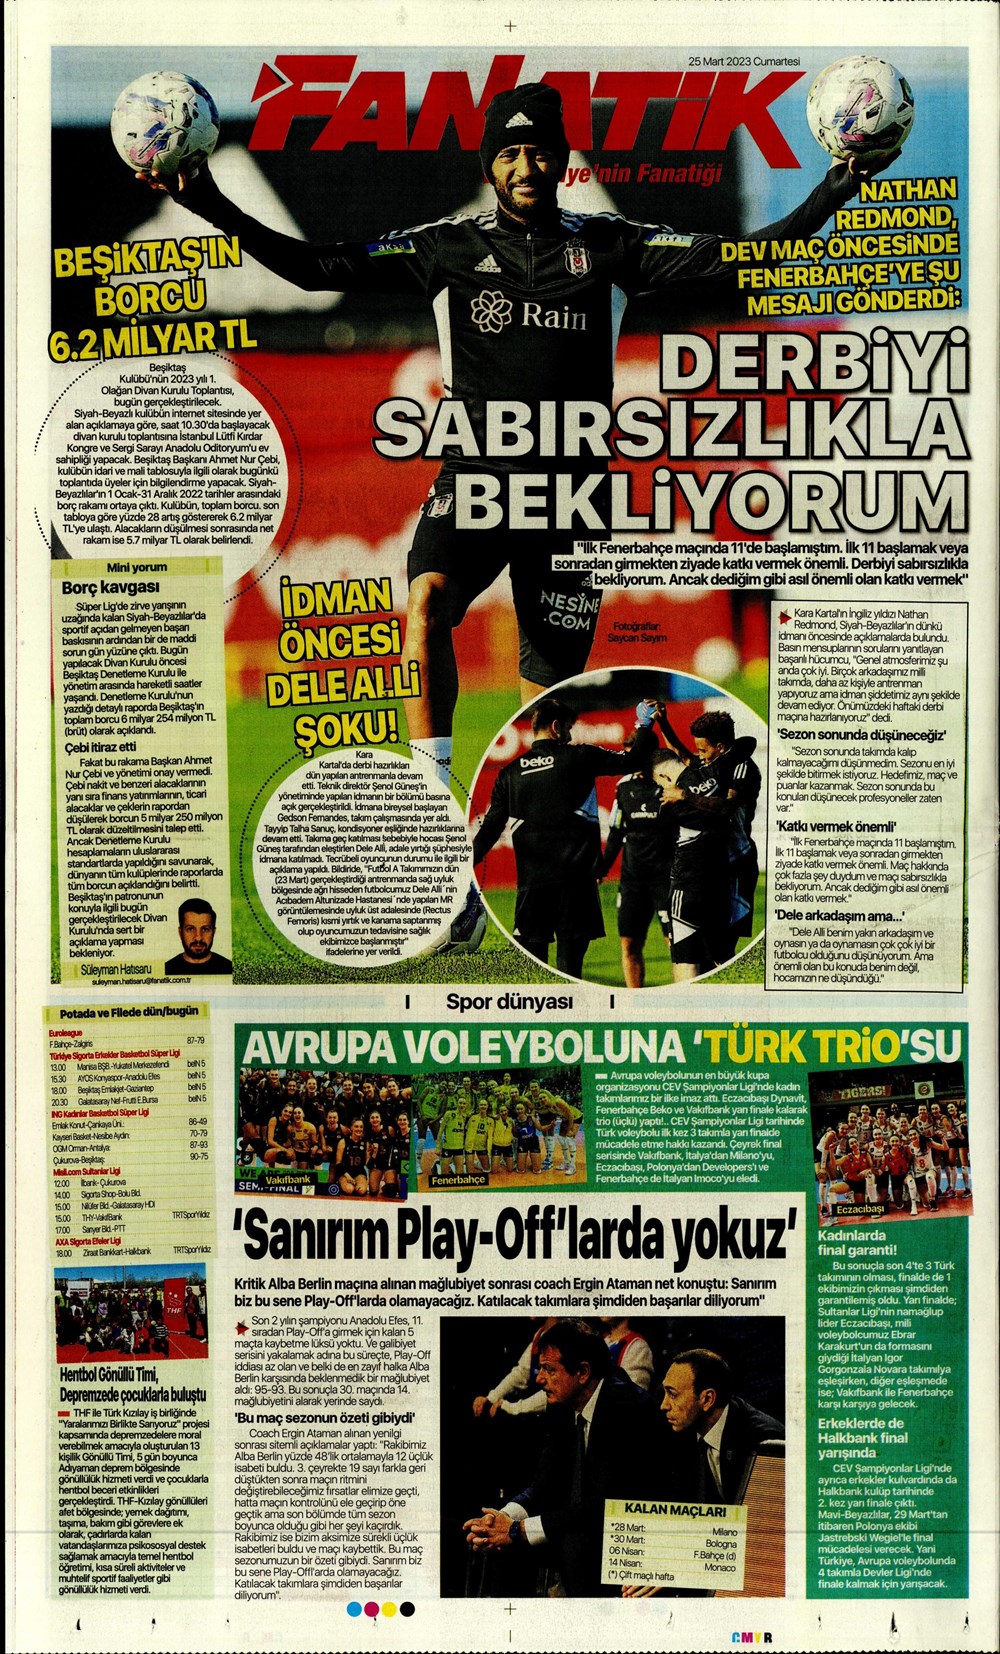 "Yeni bir başlangıç" - Sporun manşetleri - 9. Foto